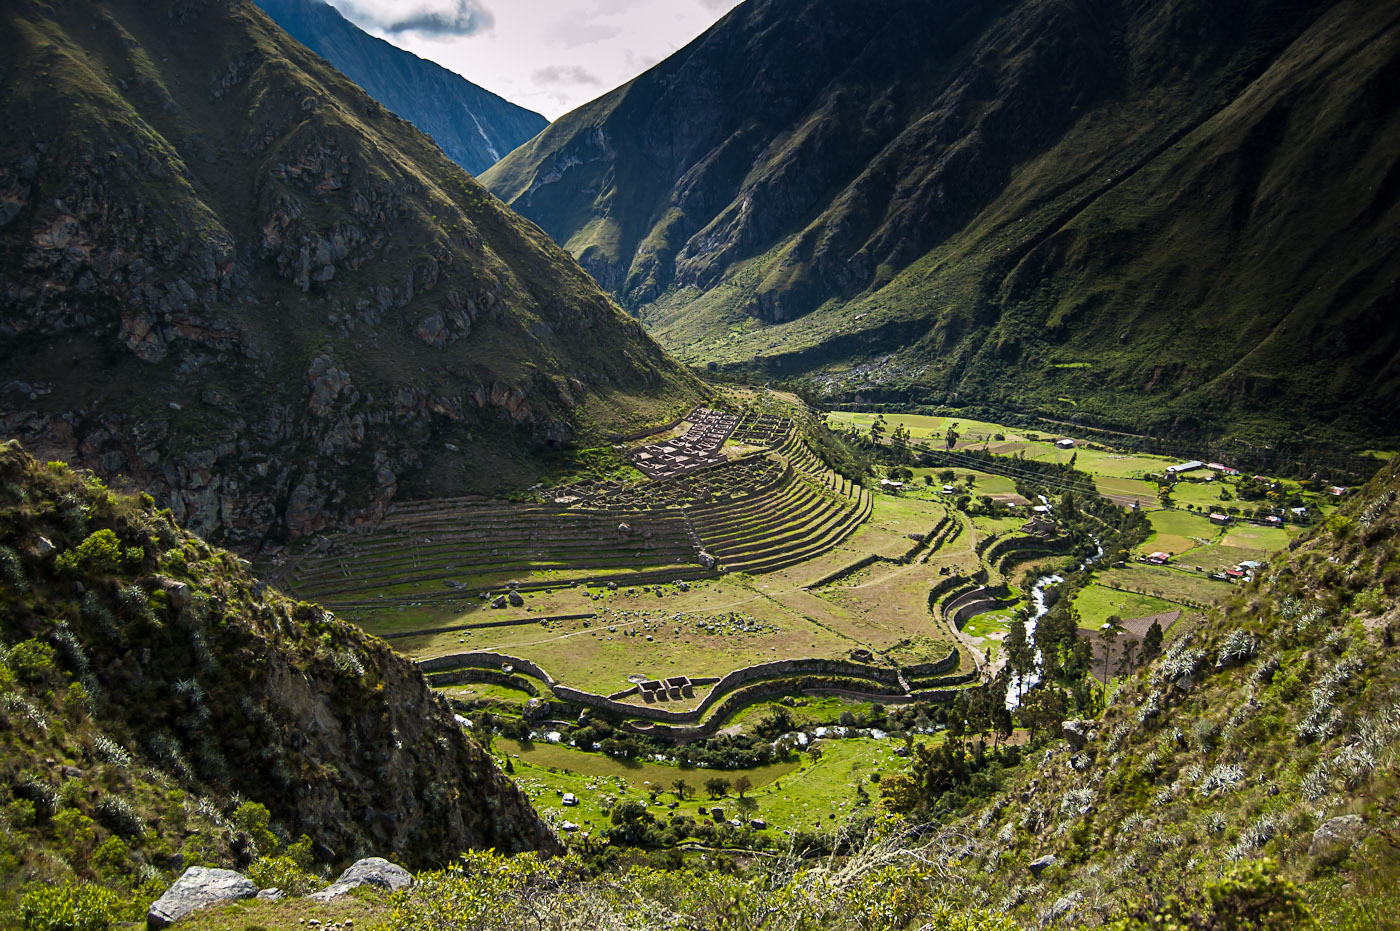 Inca Trail to Machu Picchu / Camino Inca to Machu Picchu